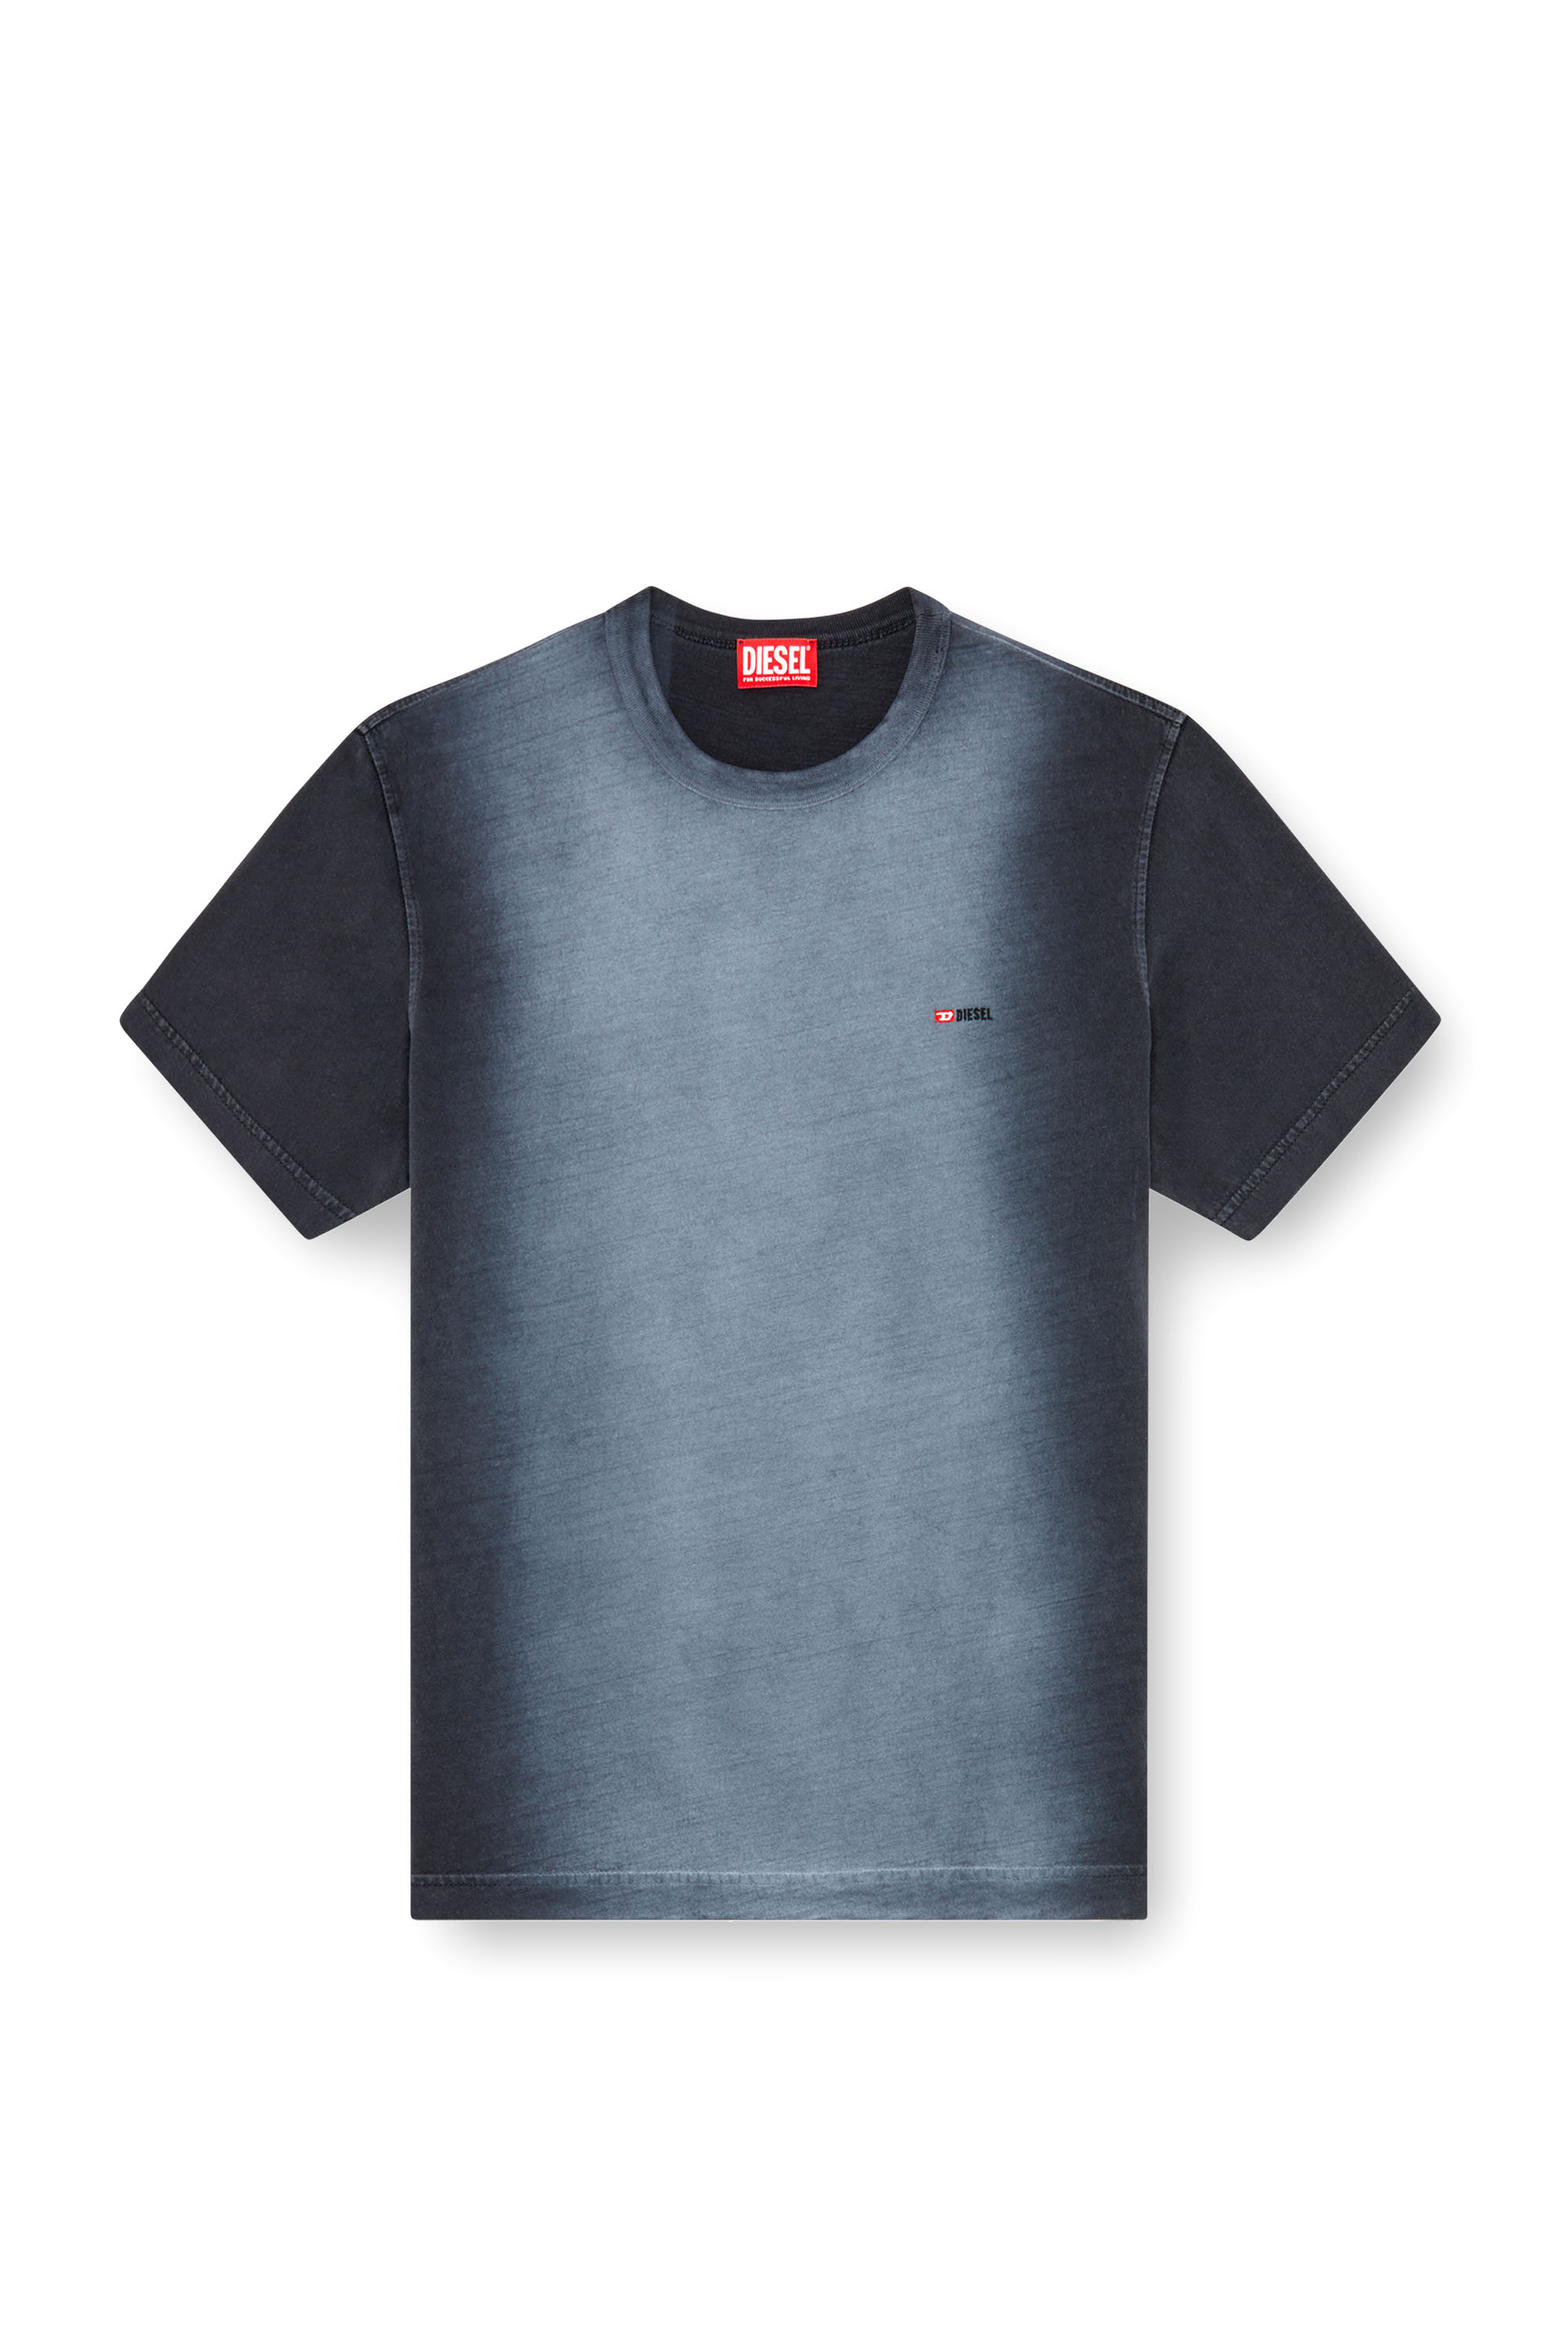 Diesel - T-ADJUST-Q2, Hombre Camiseta en tejido de algodón rociado in Negro - Image 3